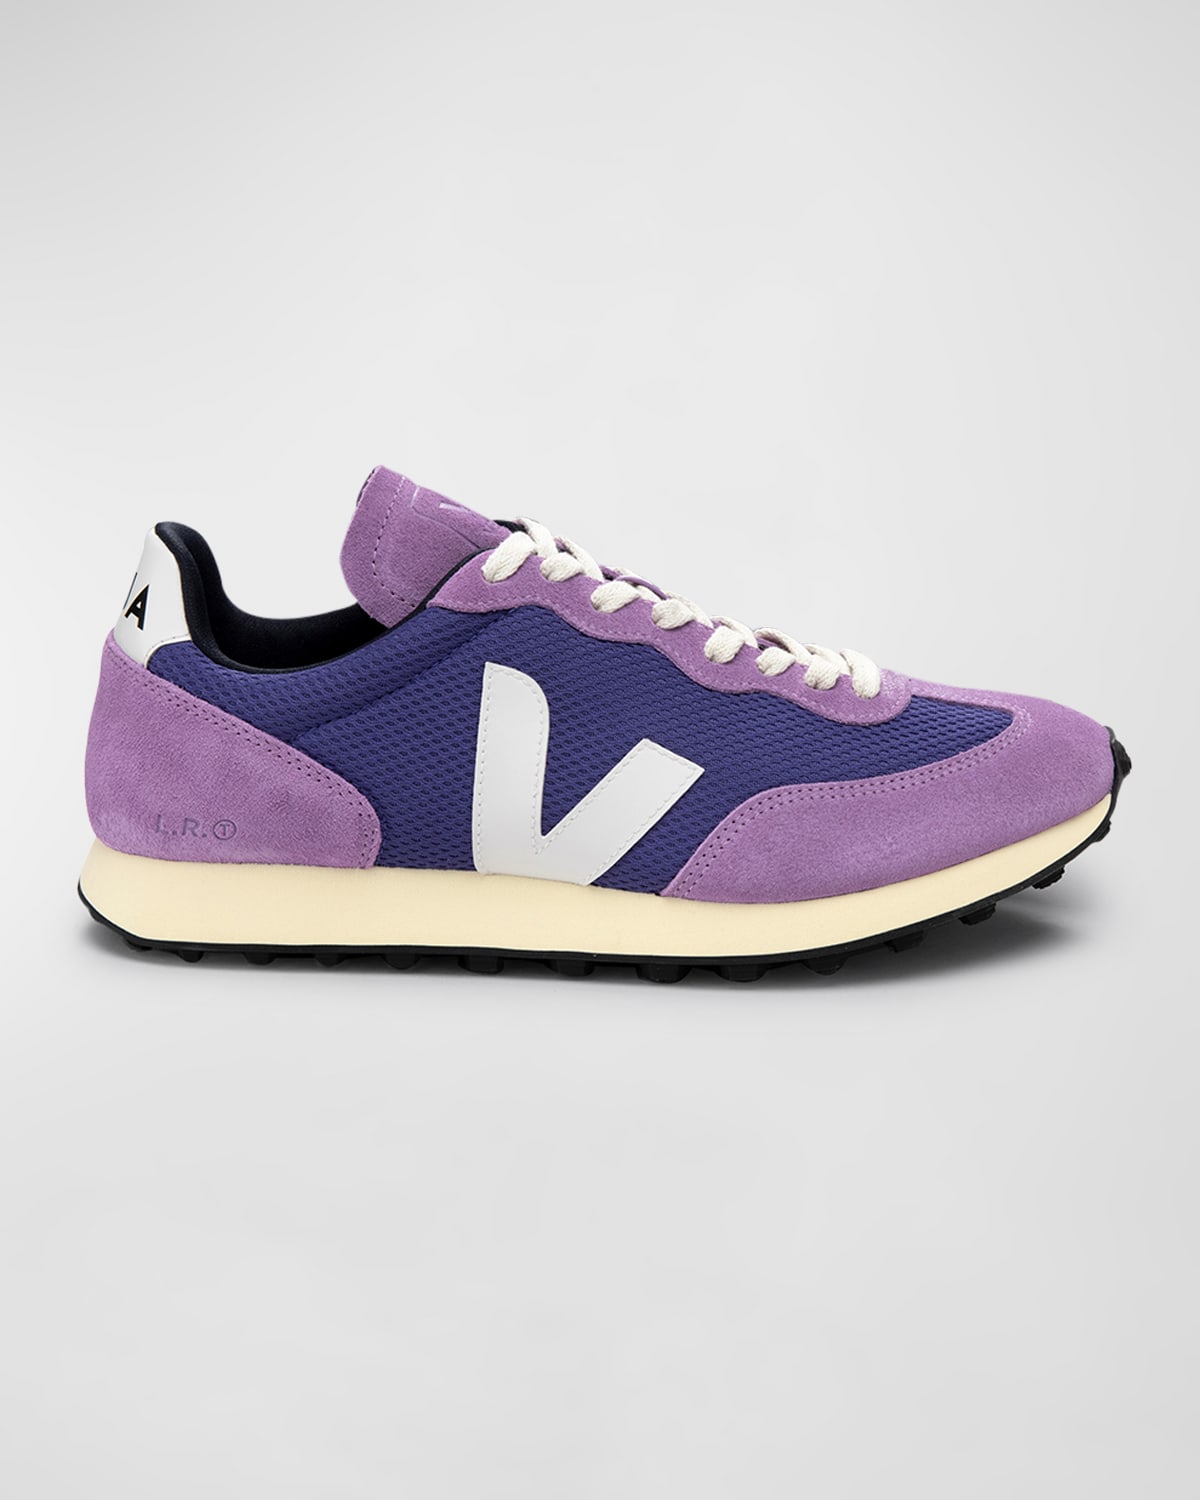 Veja Rio Branco Colorblock Runner Sneakers In Purple White